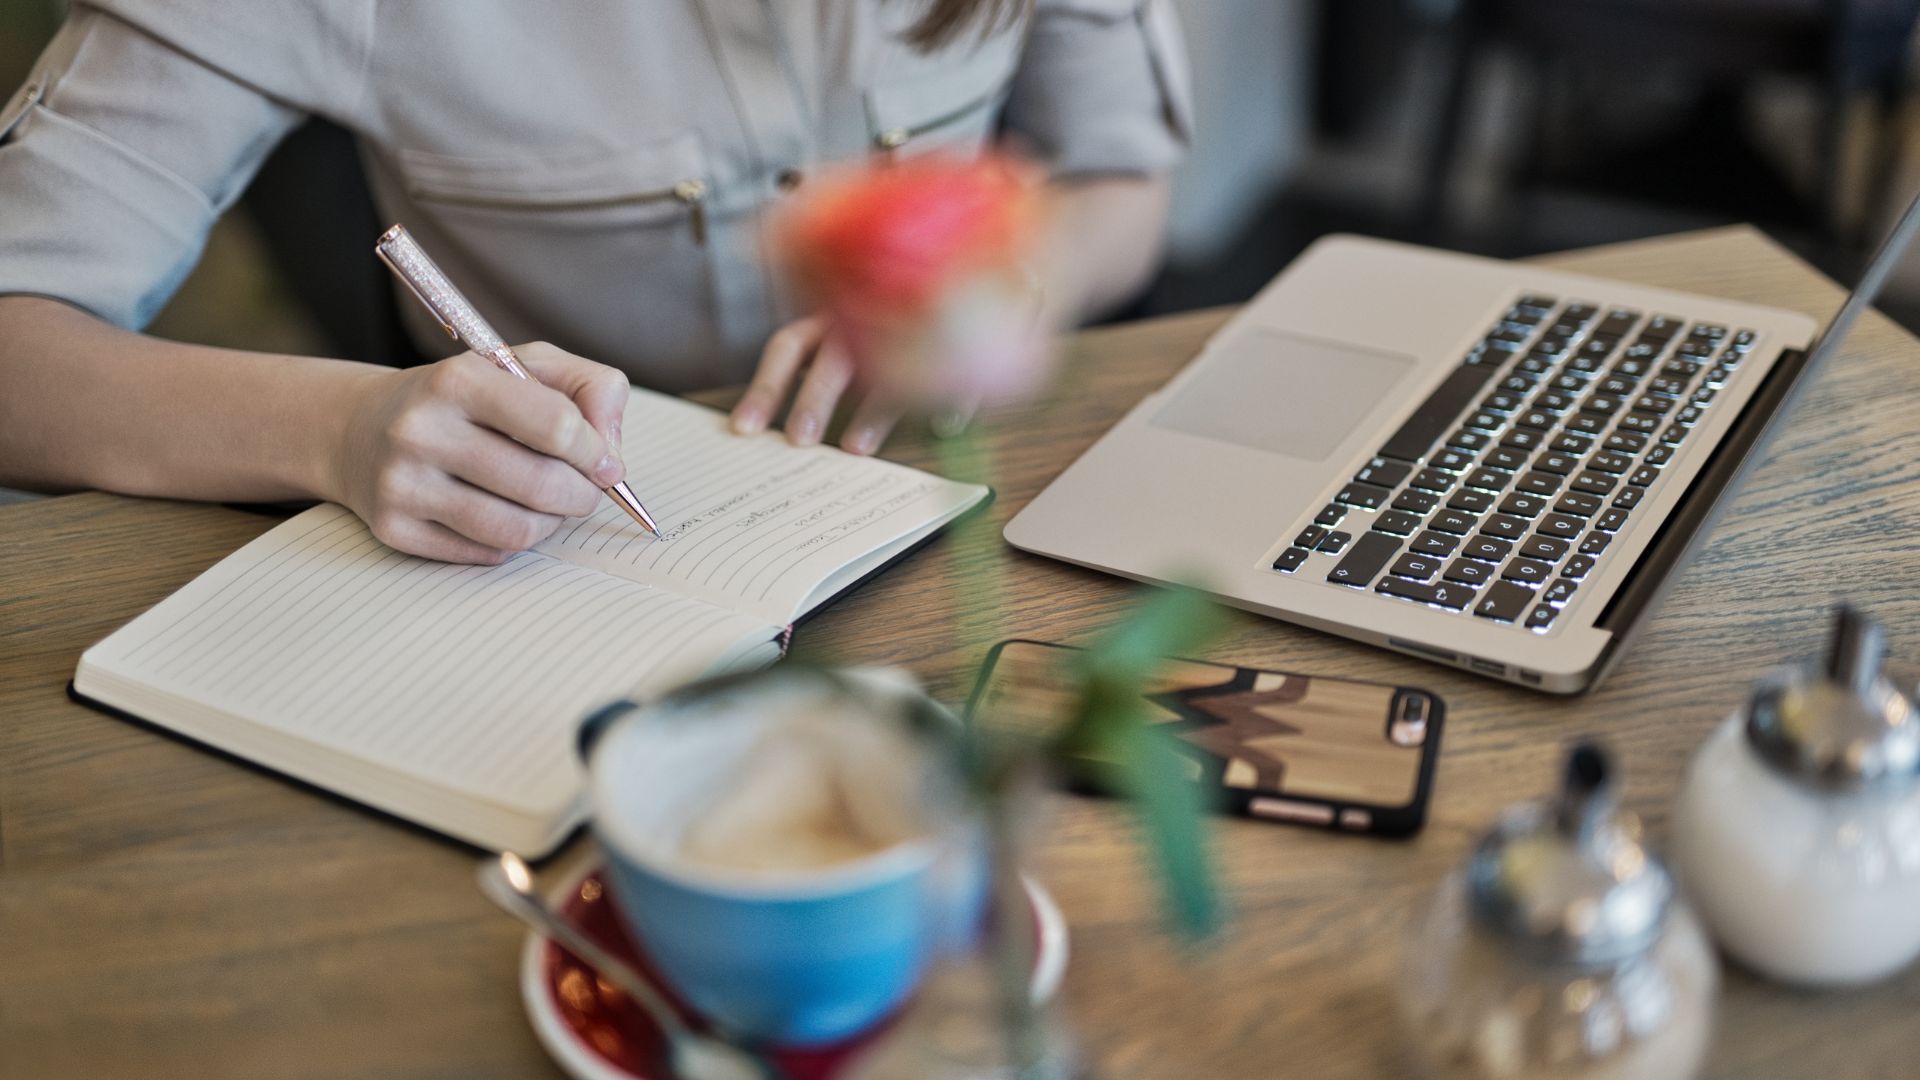 Kobieta siedząca przy biurku pisze w notatniku. Na biurku leży otwarty laptop, telefon i niebieska filiżanka, róża